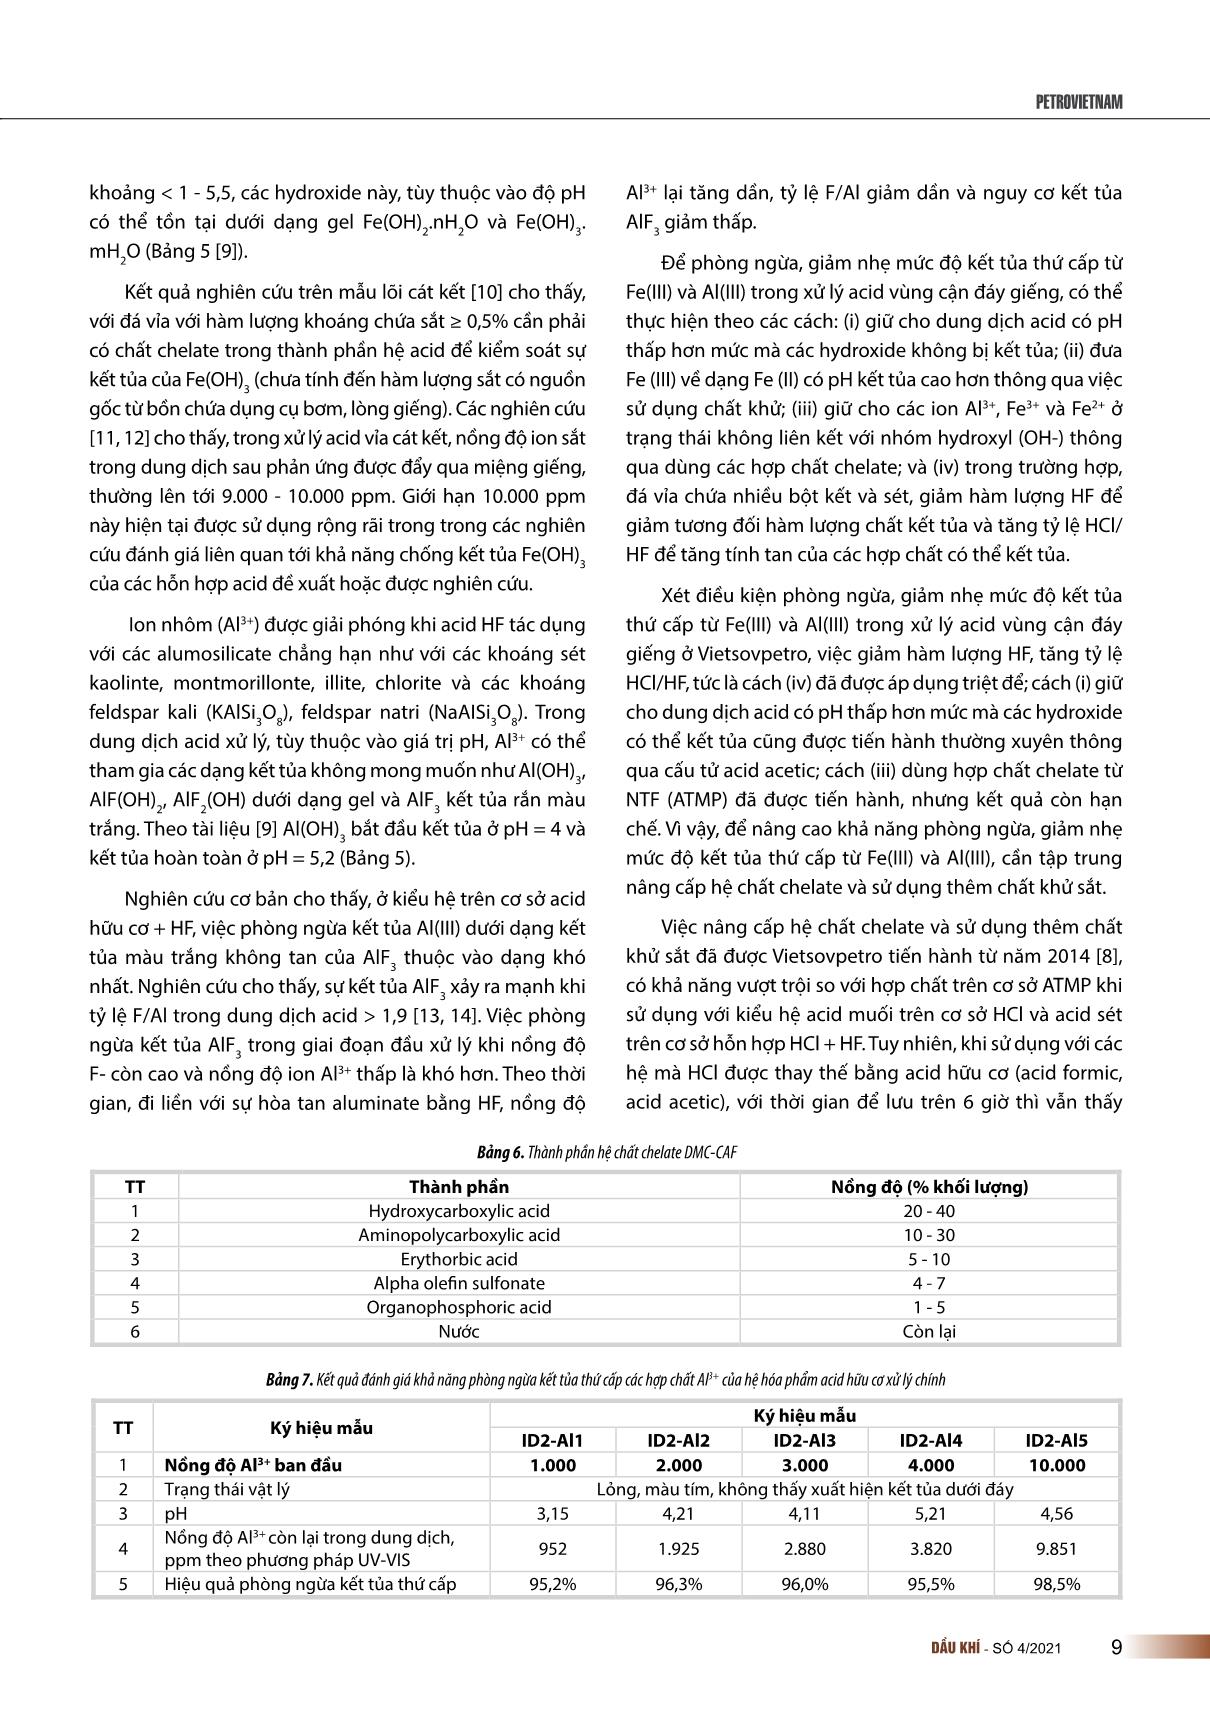 Tạp chí Dầu khí - Số 4/2021 trang 10